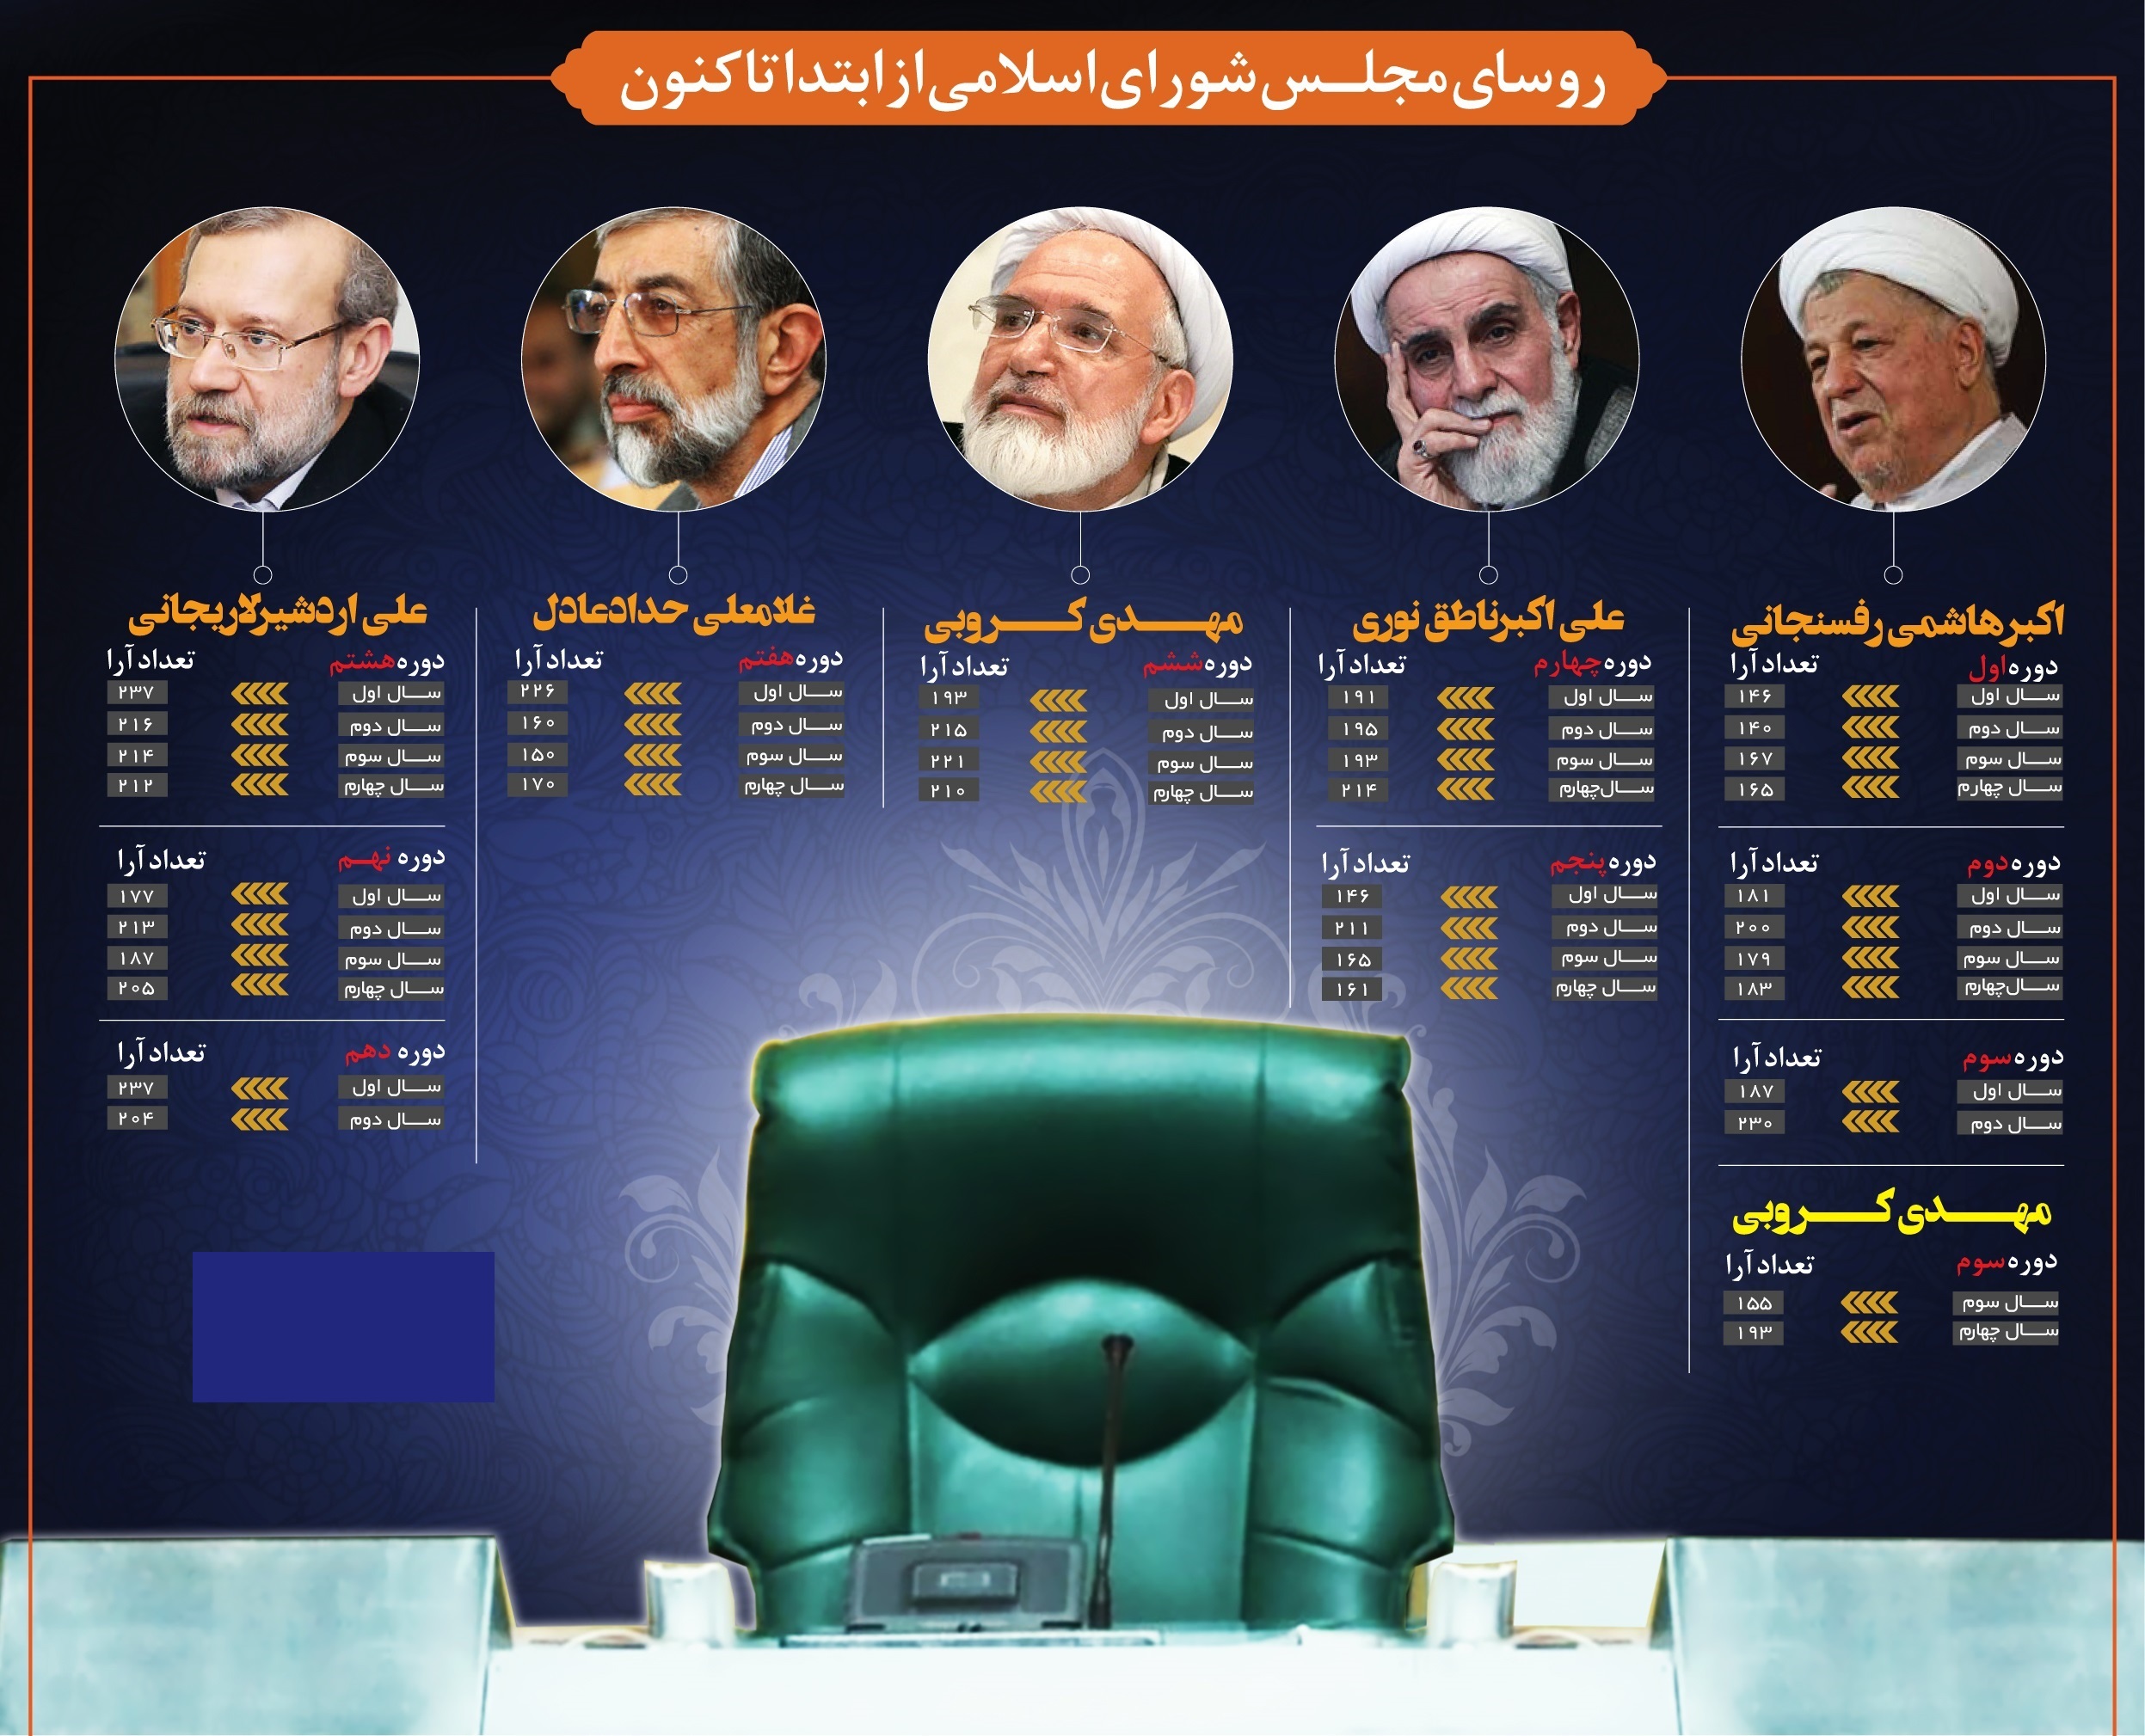 روسای مجلس شورای اسلامی از ابتدا تاکنون +اینفوگرافیک